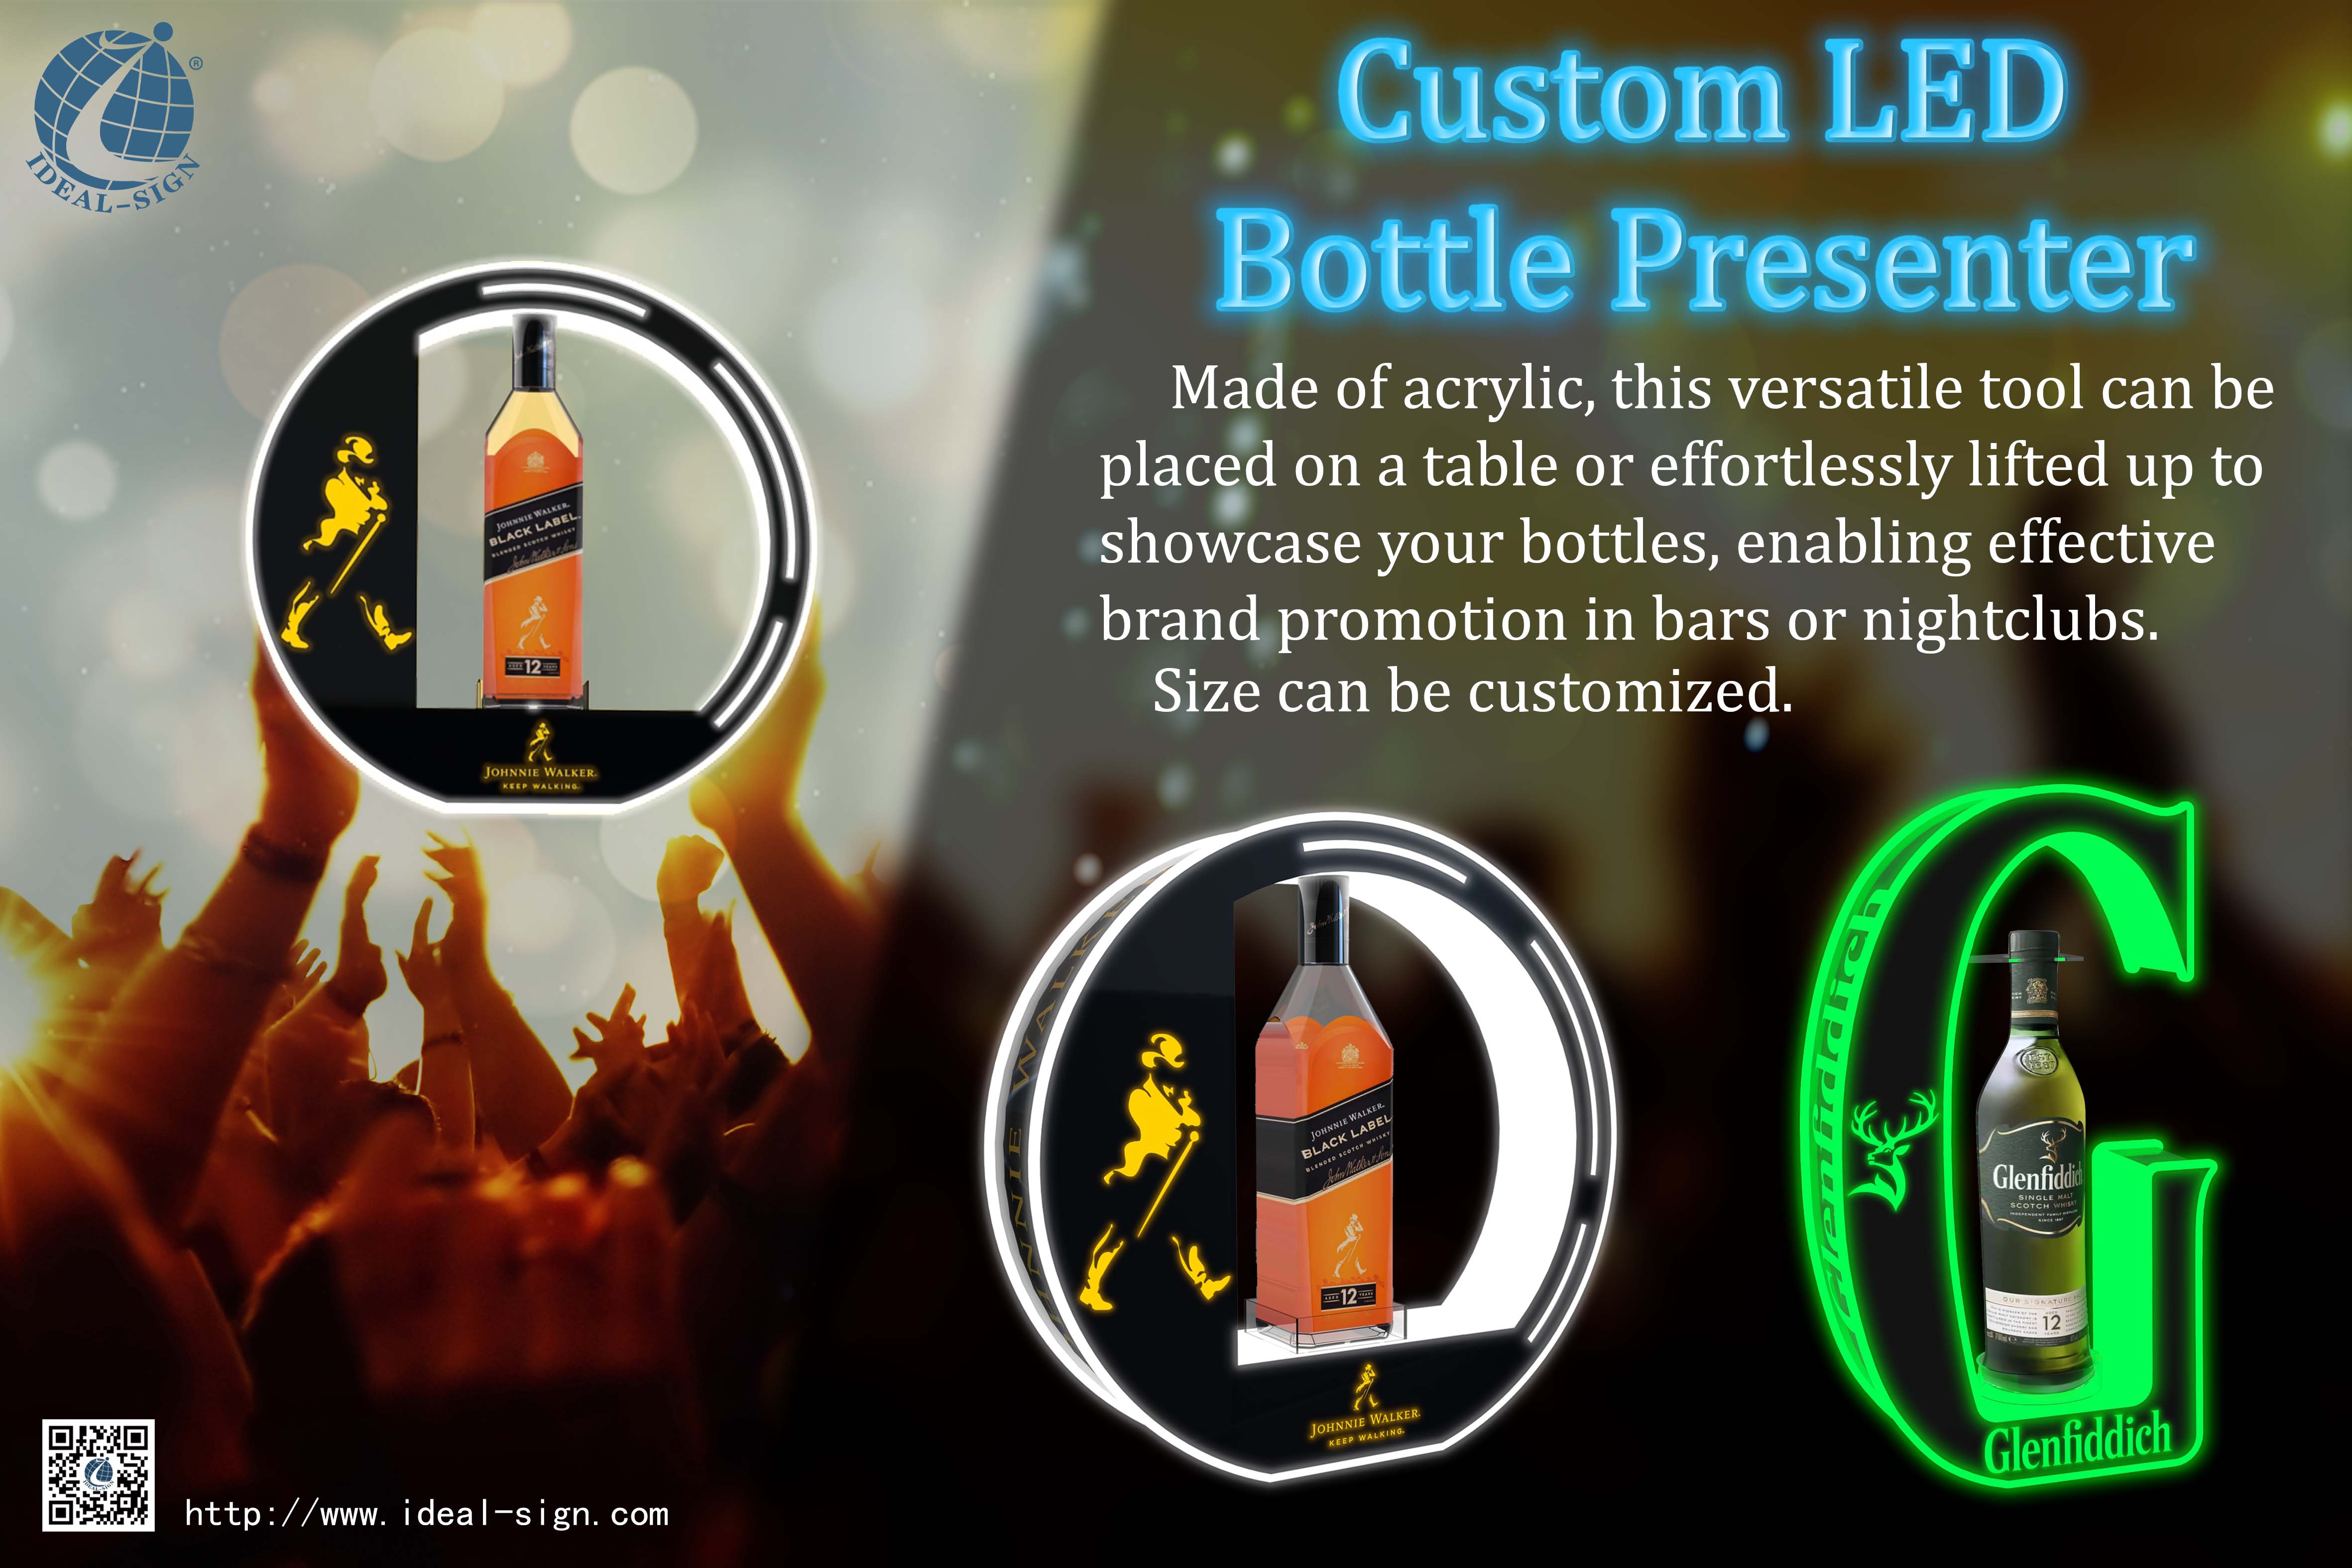 Custom LED Bottle Presenter